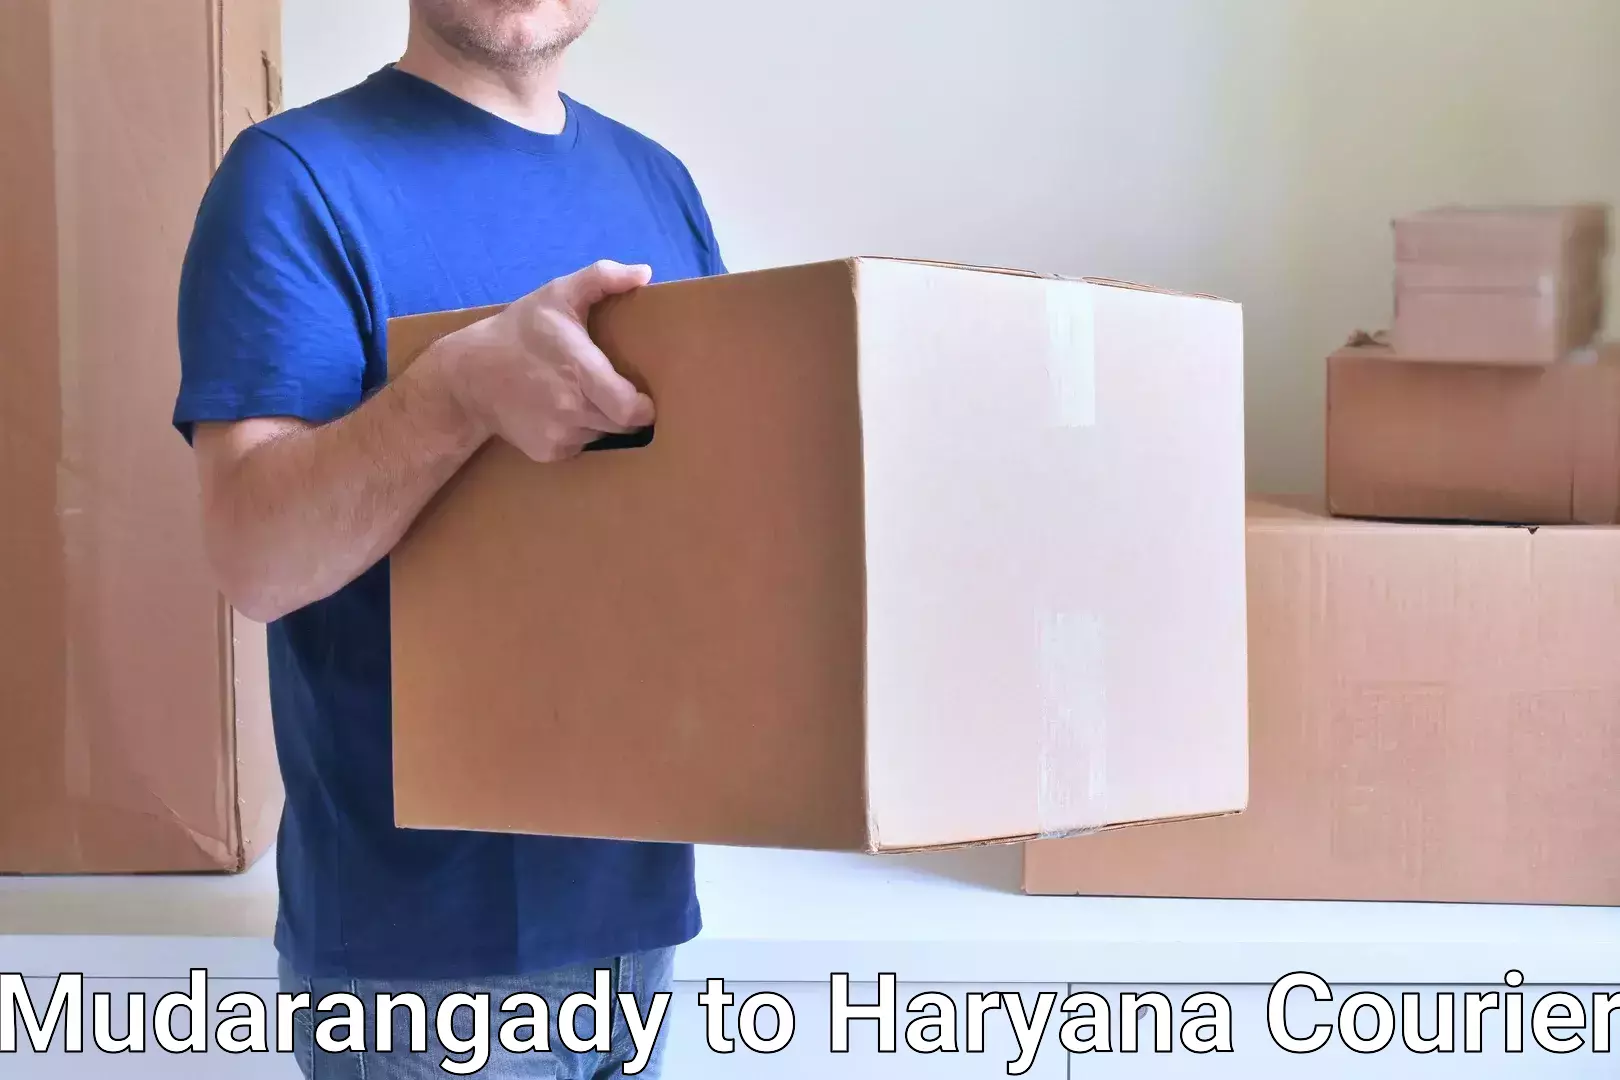 Advanced shipping network Mudarangady to Chaudhary Charan Singh Haryana Agricultural University Hisar